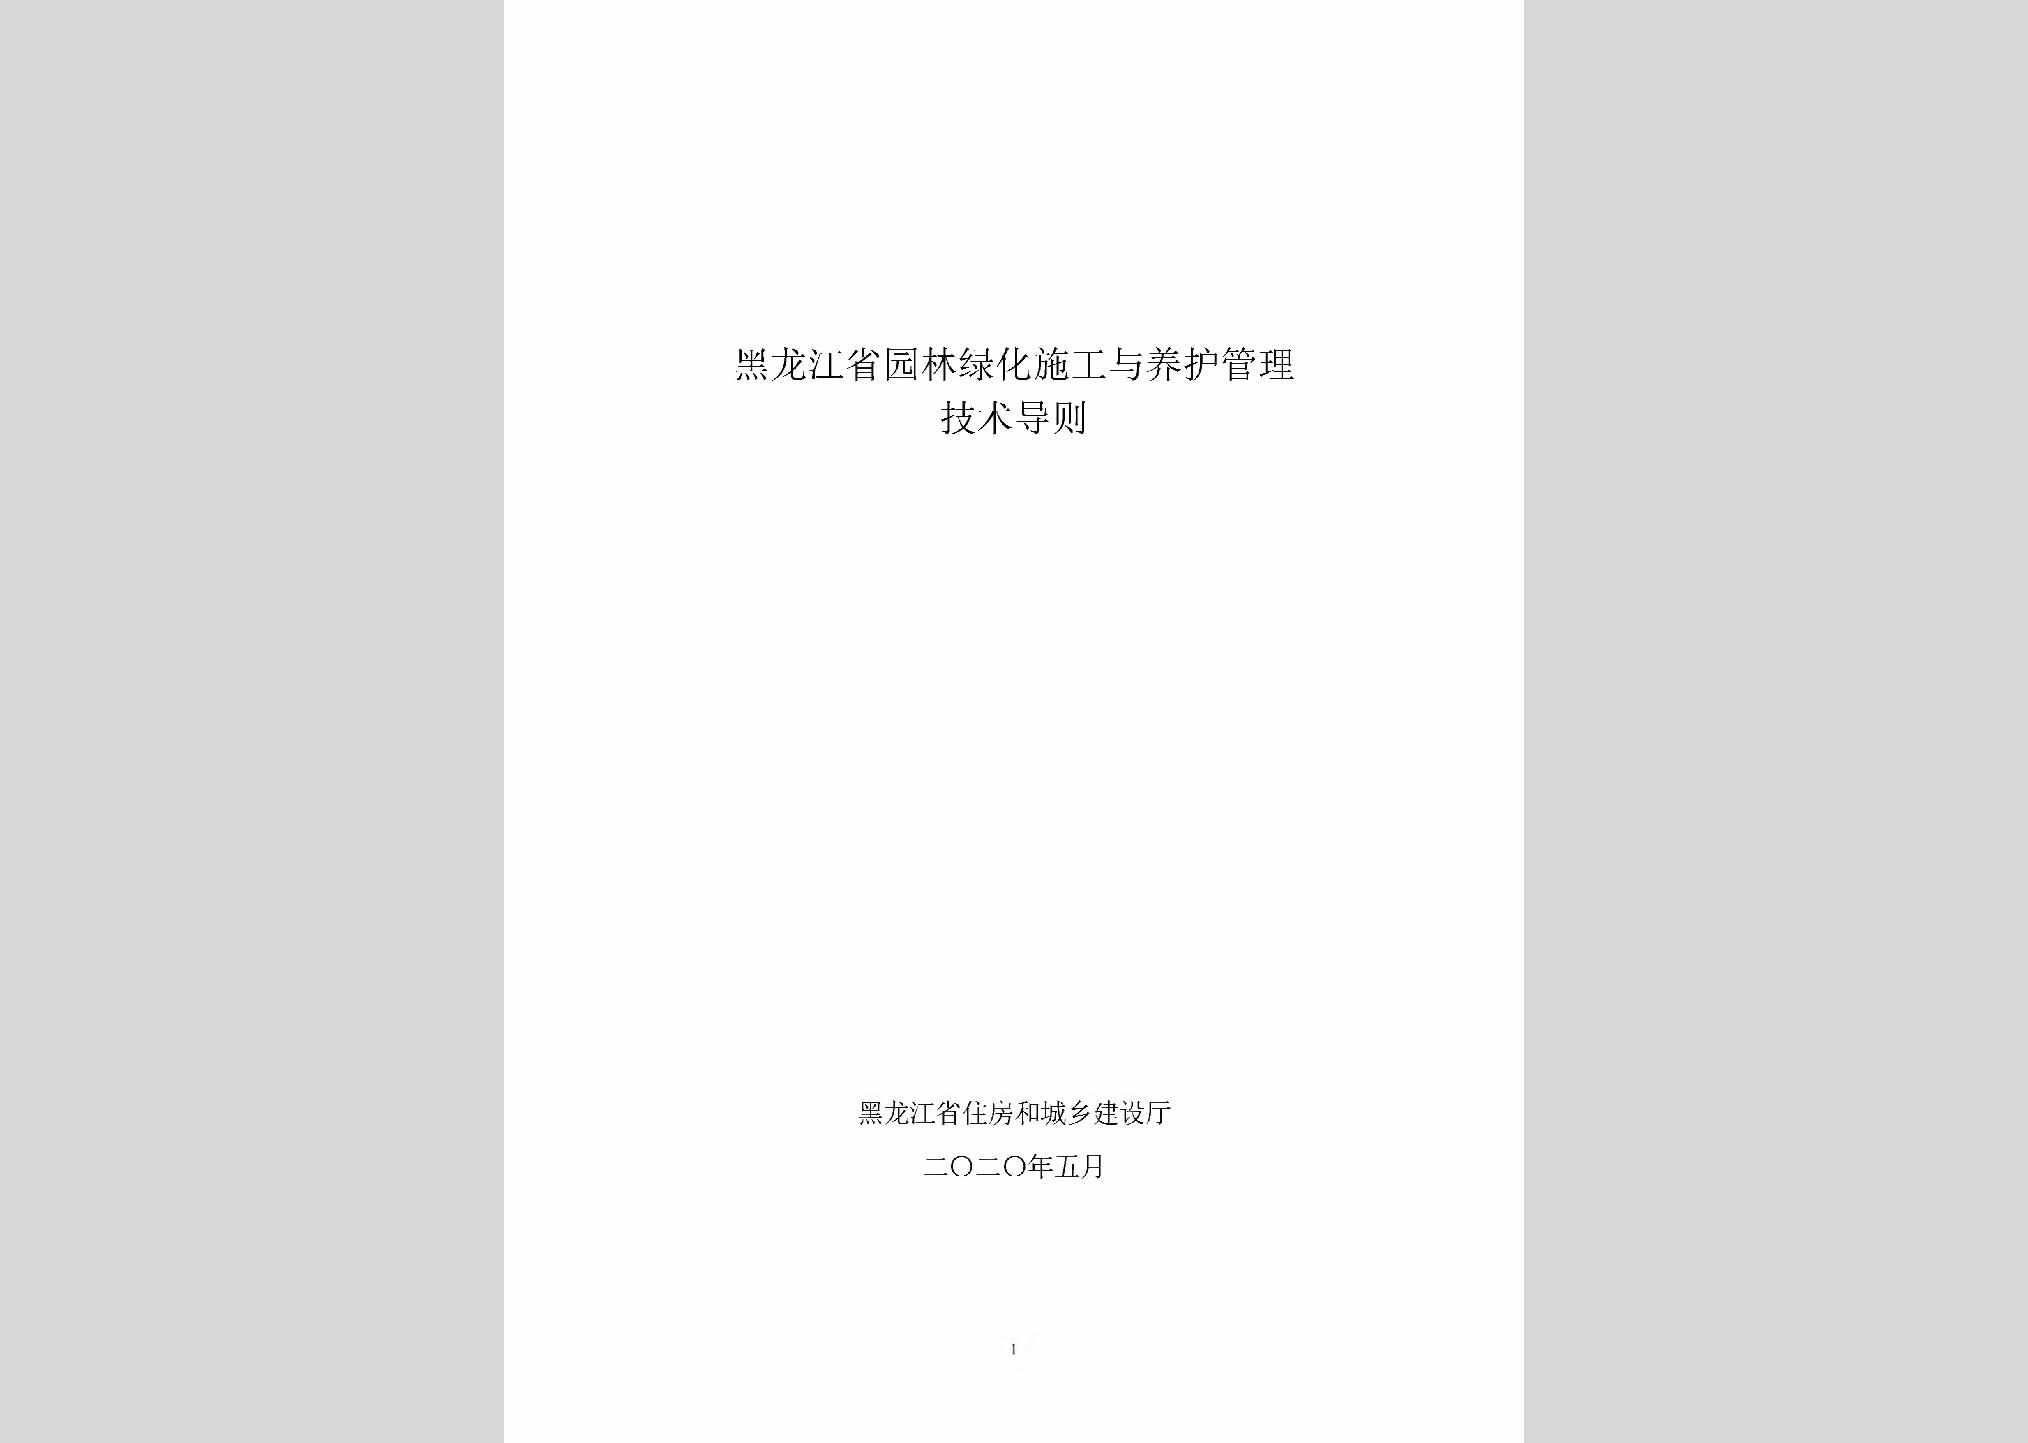 YLLHSGYY：黑龙江省园林绿化施工与养护管理技术导则